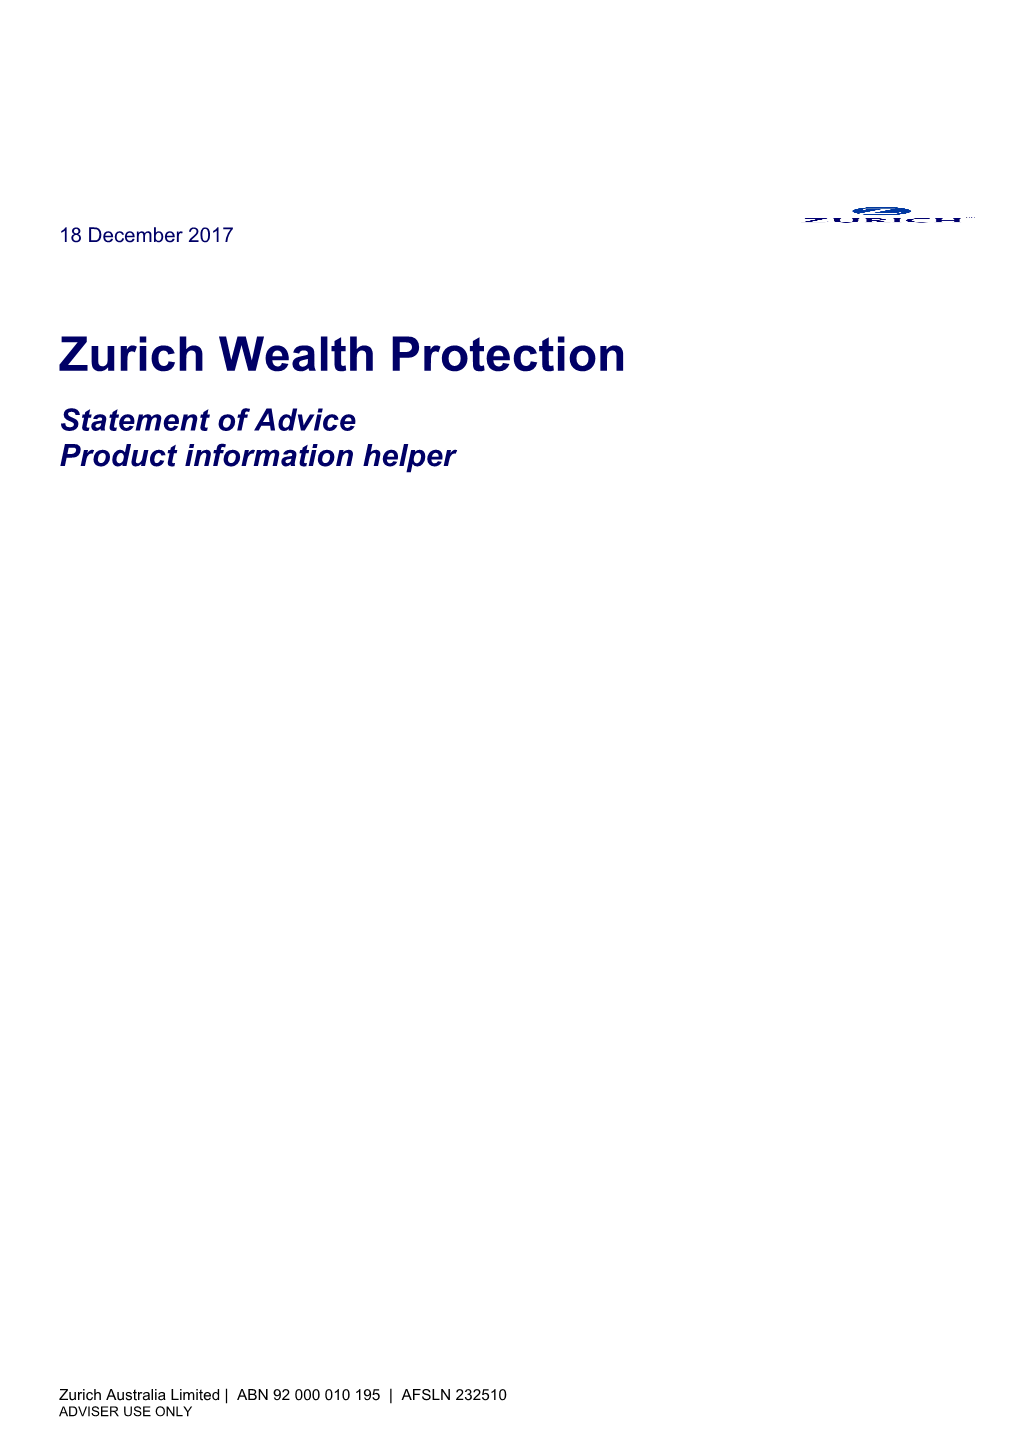 Zurich Wealth Protection